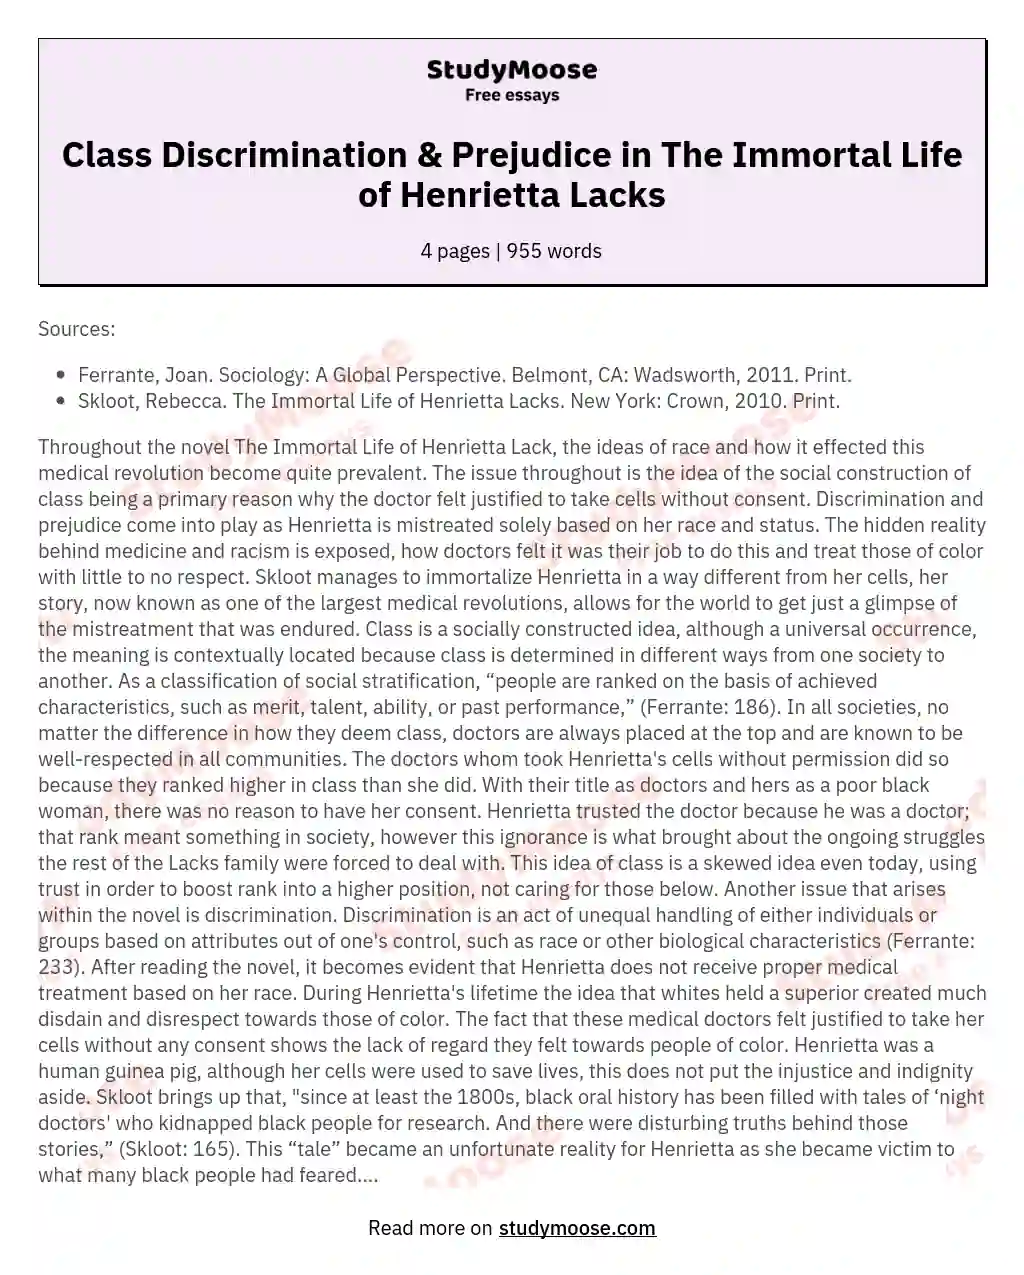 Class Discrimination & Prejudice in The Immortal Life of Henrietta Lacks essay